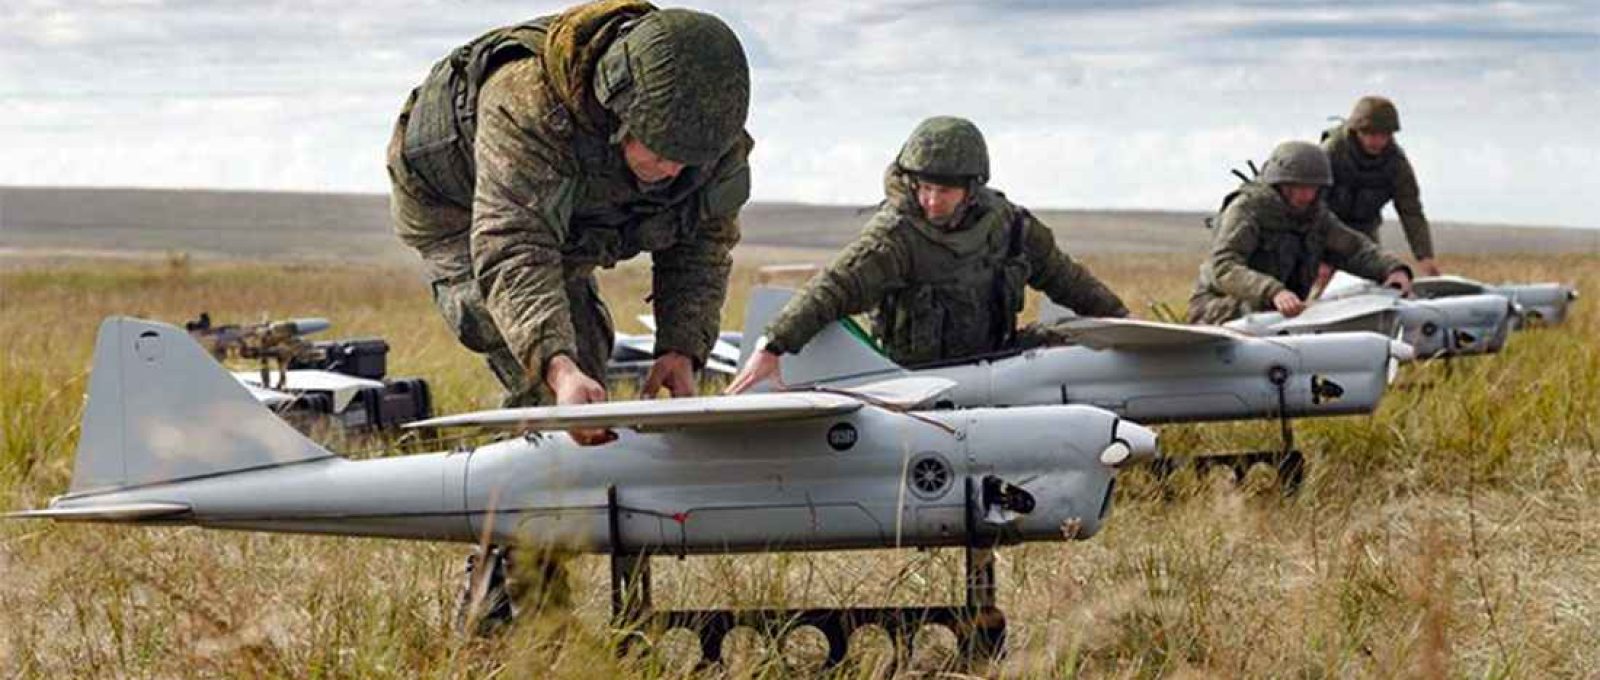 Drones Orlan-10, muito utilizados pelos russos, inclusive em enxames (Ministério da Defesa da Rússia).